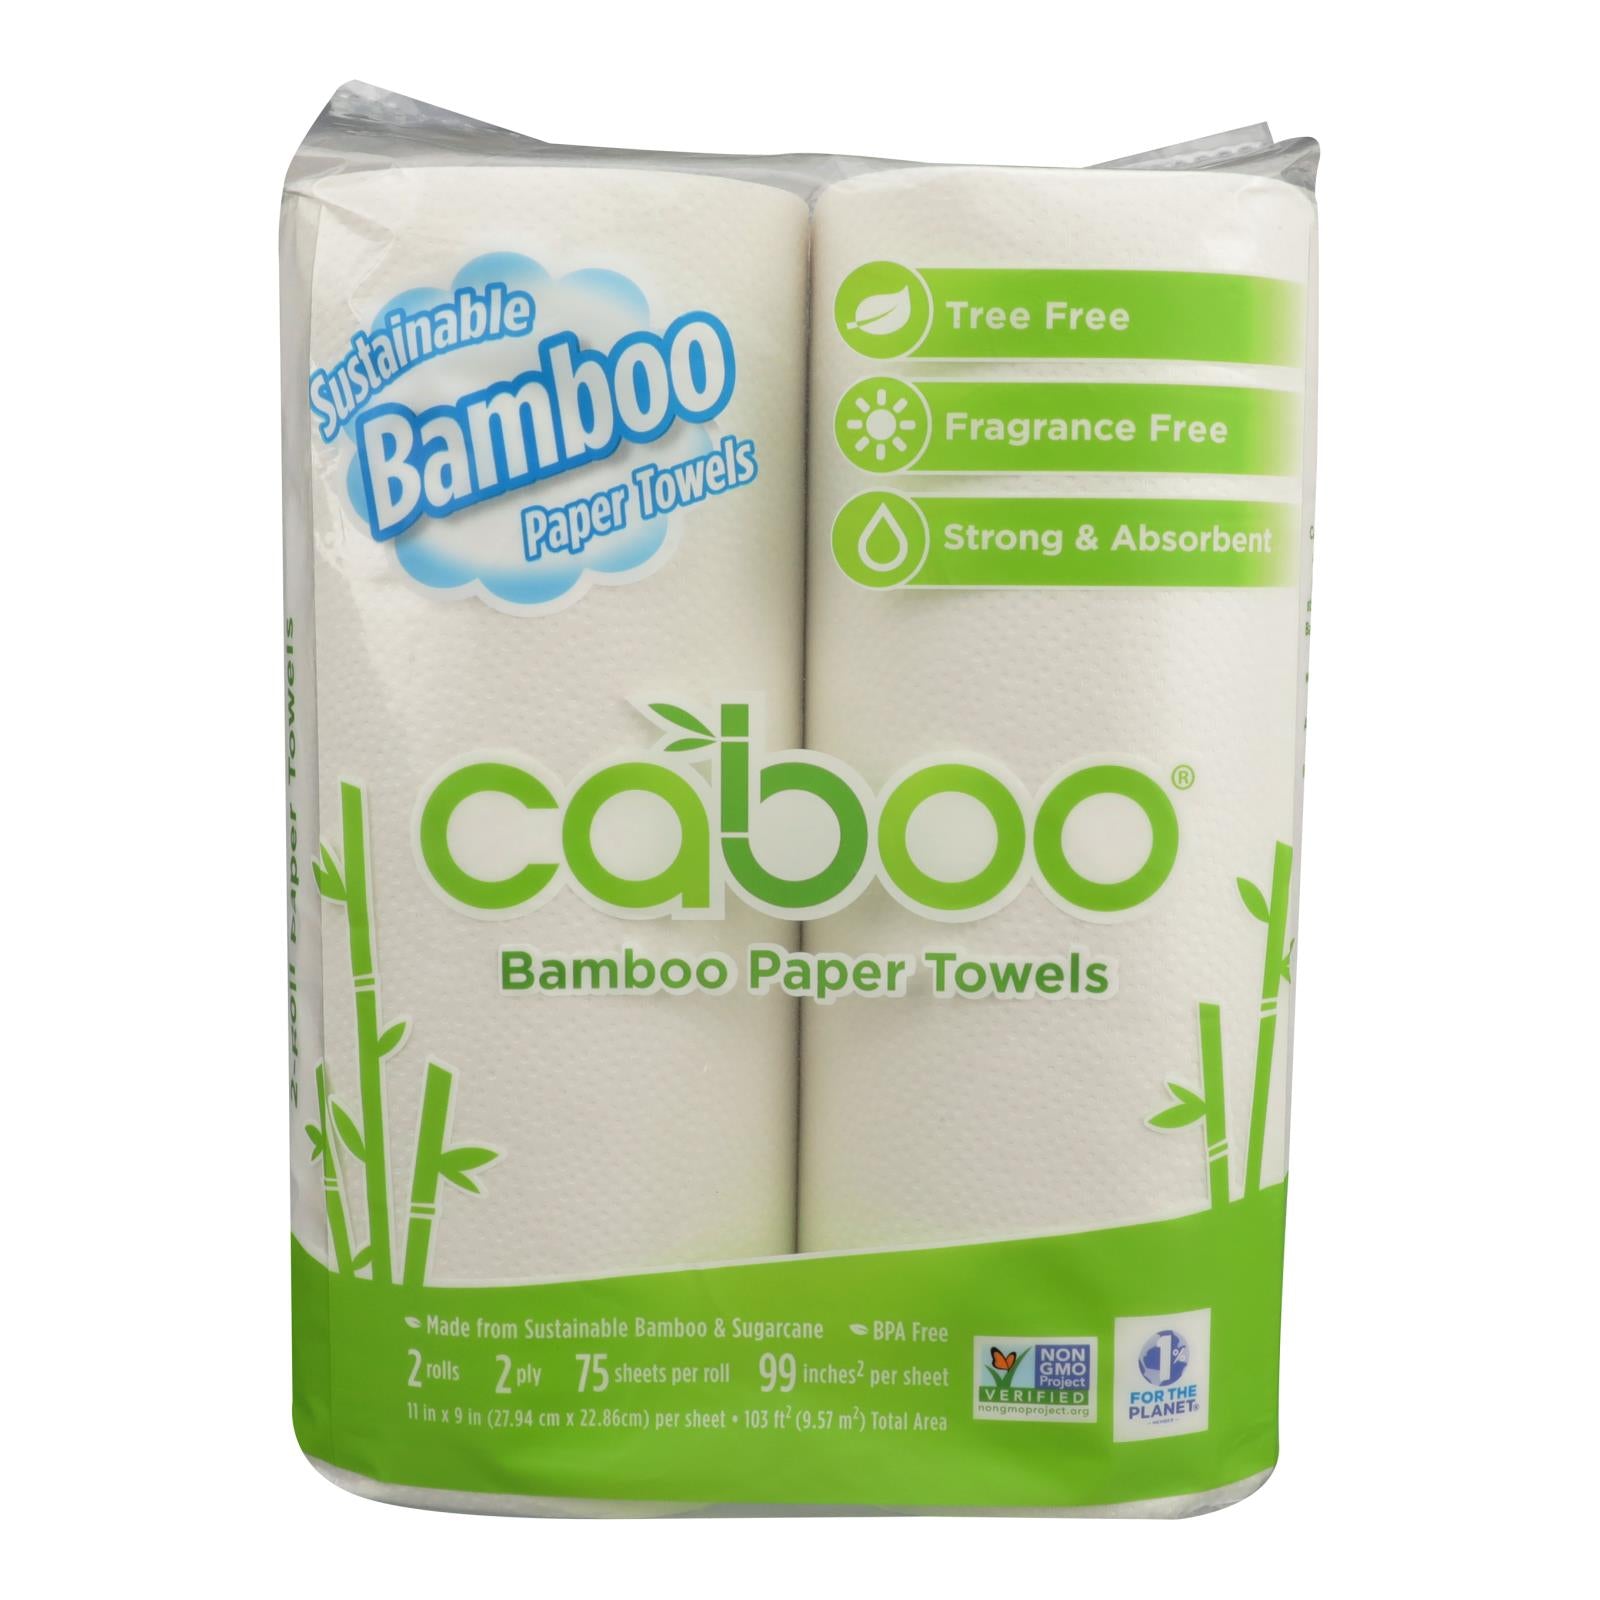 Reel - Buy 1 get 1 free on Reel Bamboo Toilet Paper 12-ct